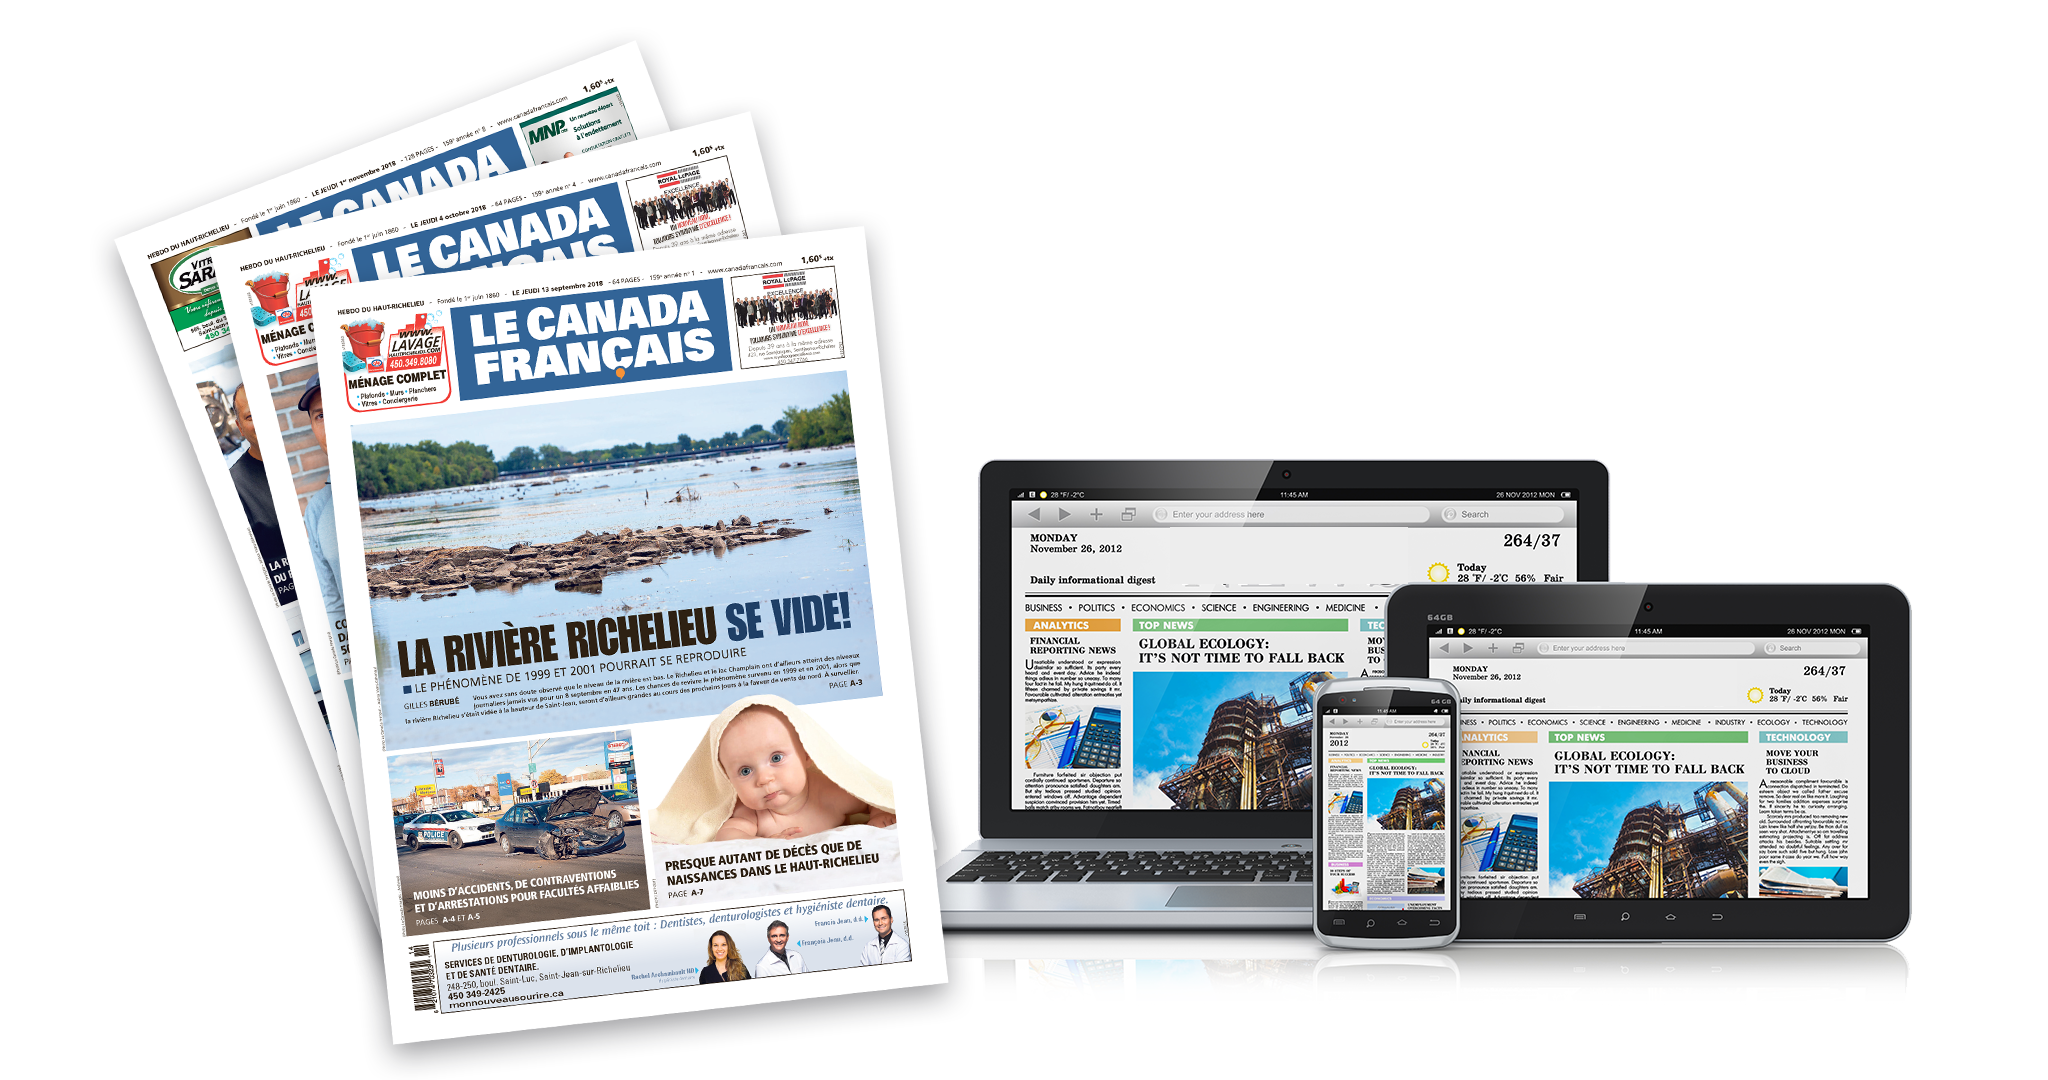 Abonnez-vous au journal Le Canada Français et accédez à tout le contenu réservé sur le site Web lecanadafrancaiskiosk.milibris.com